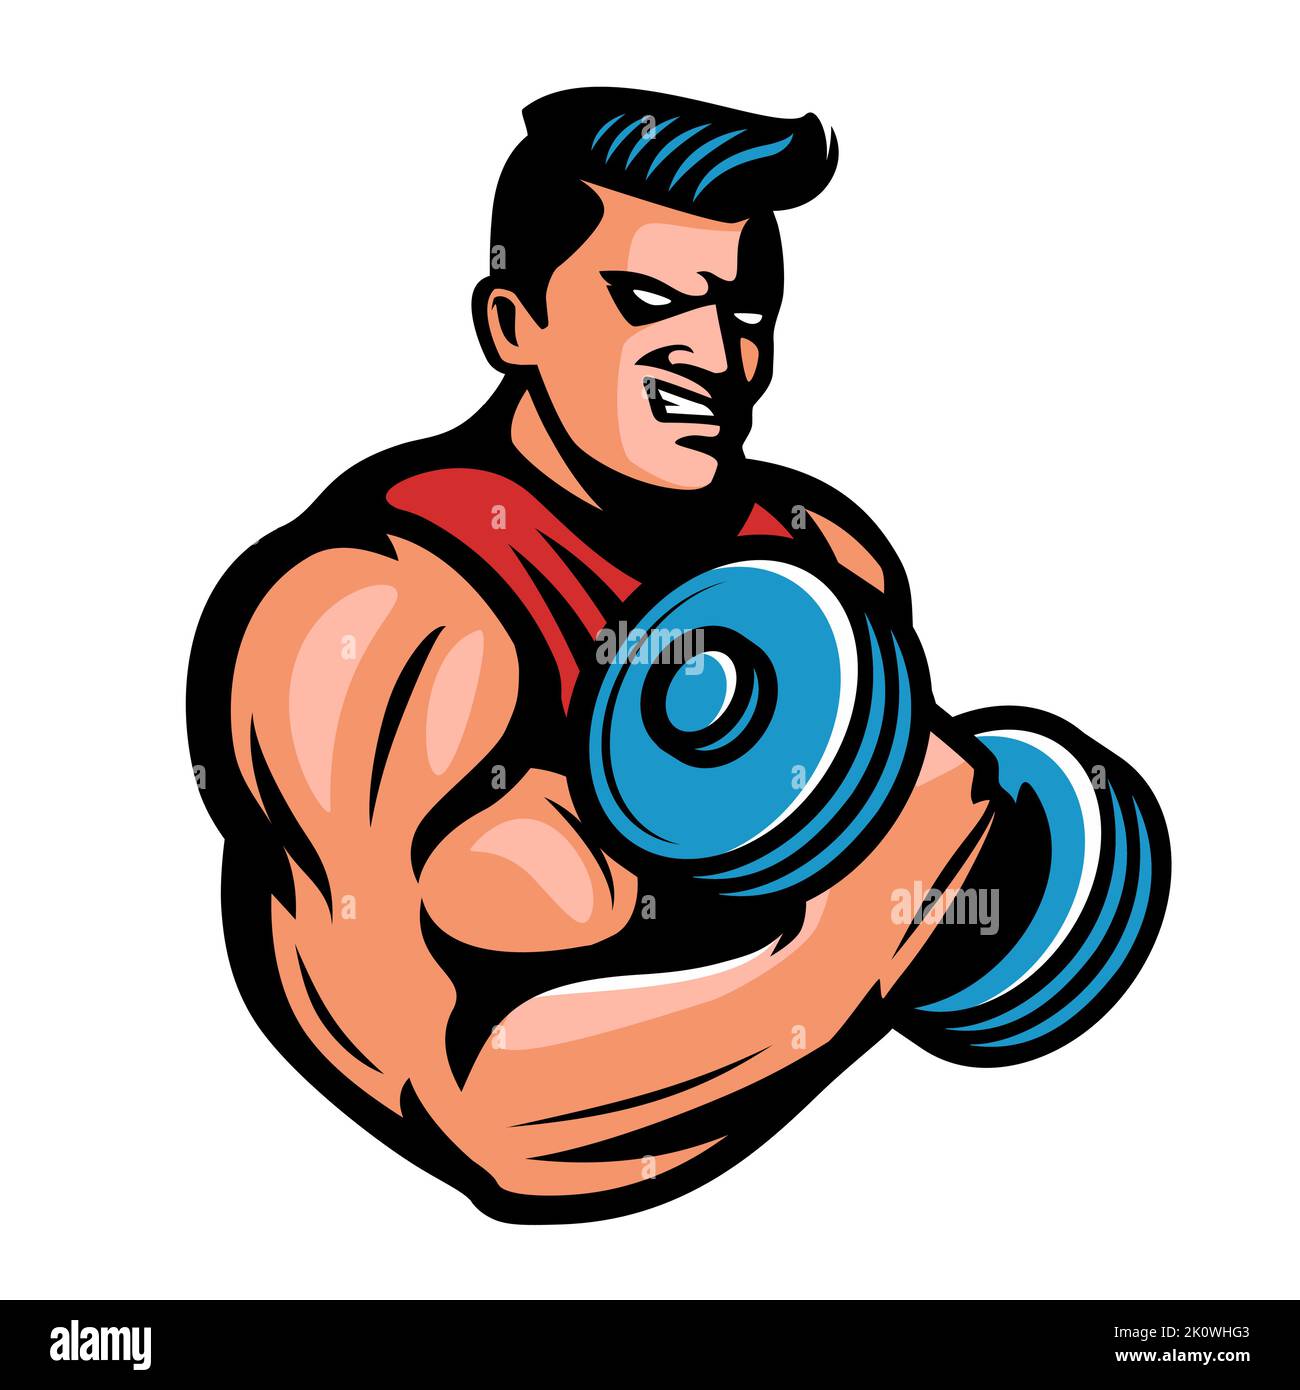 Musculoso fuerte con mancuerna pesada en la mano. Mascota deportiva. Gimnasio, emblema de culturismo. Ilustración vectorial Ilustración del Vector